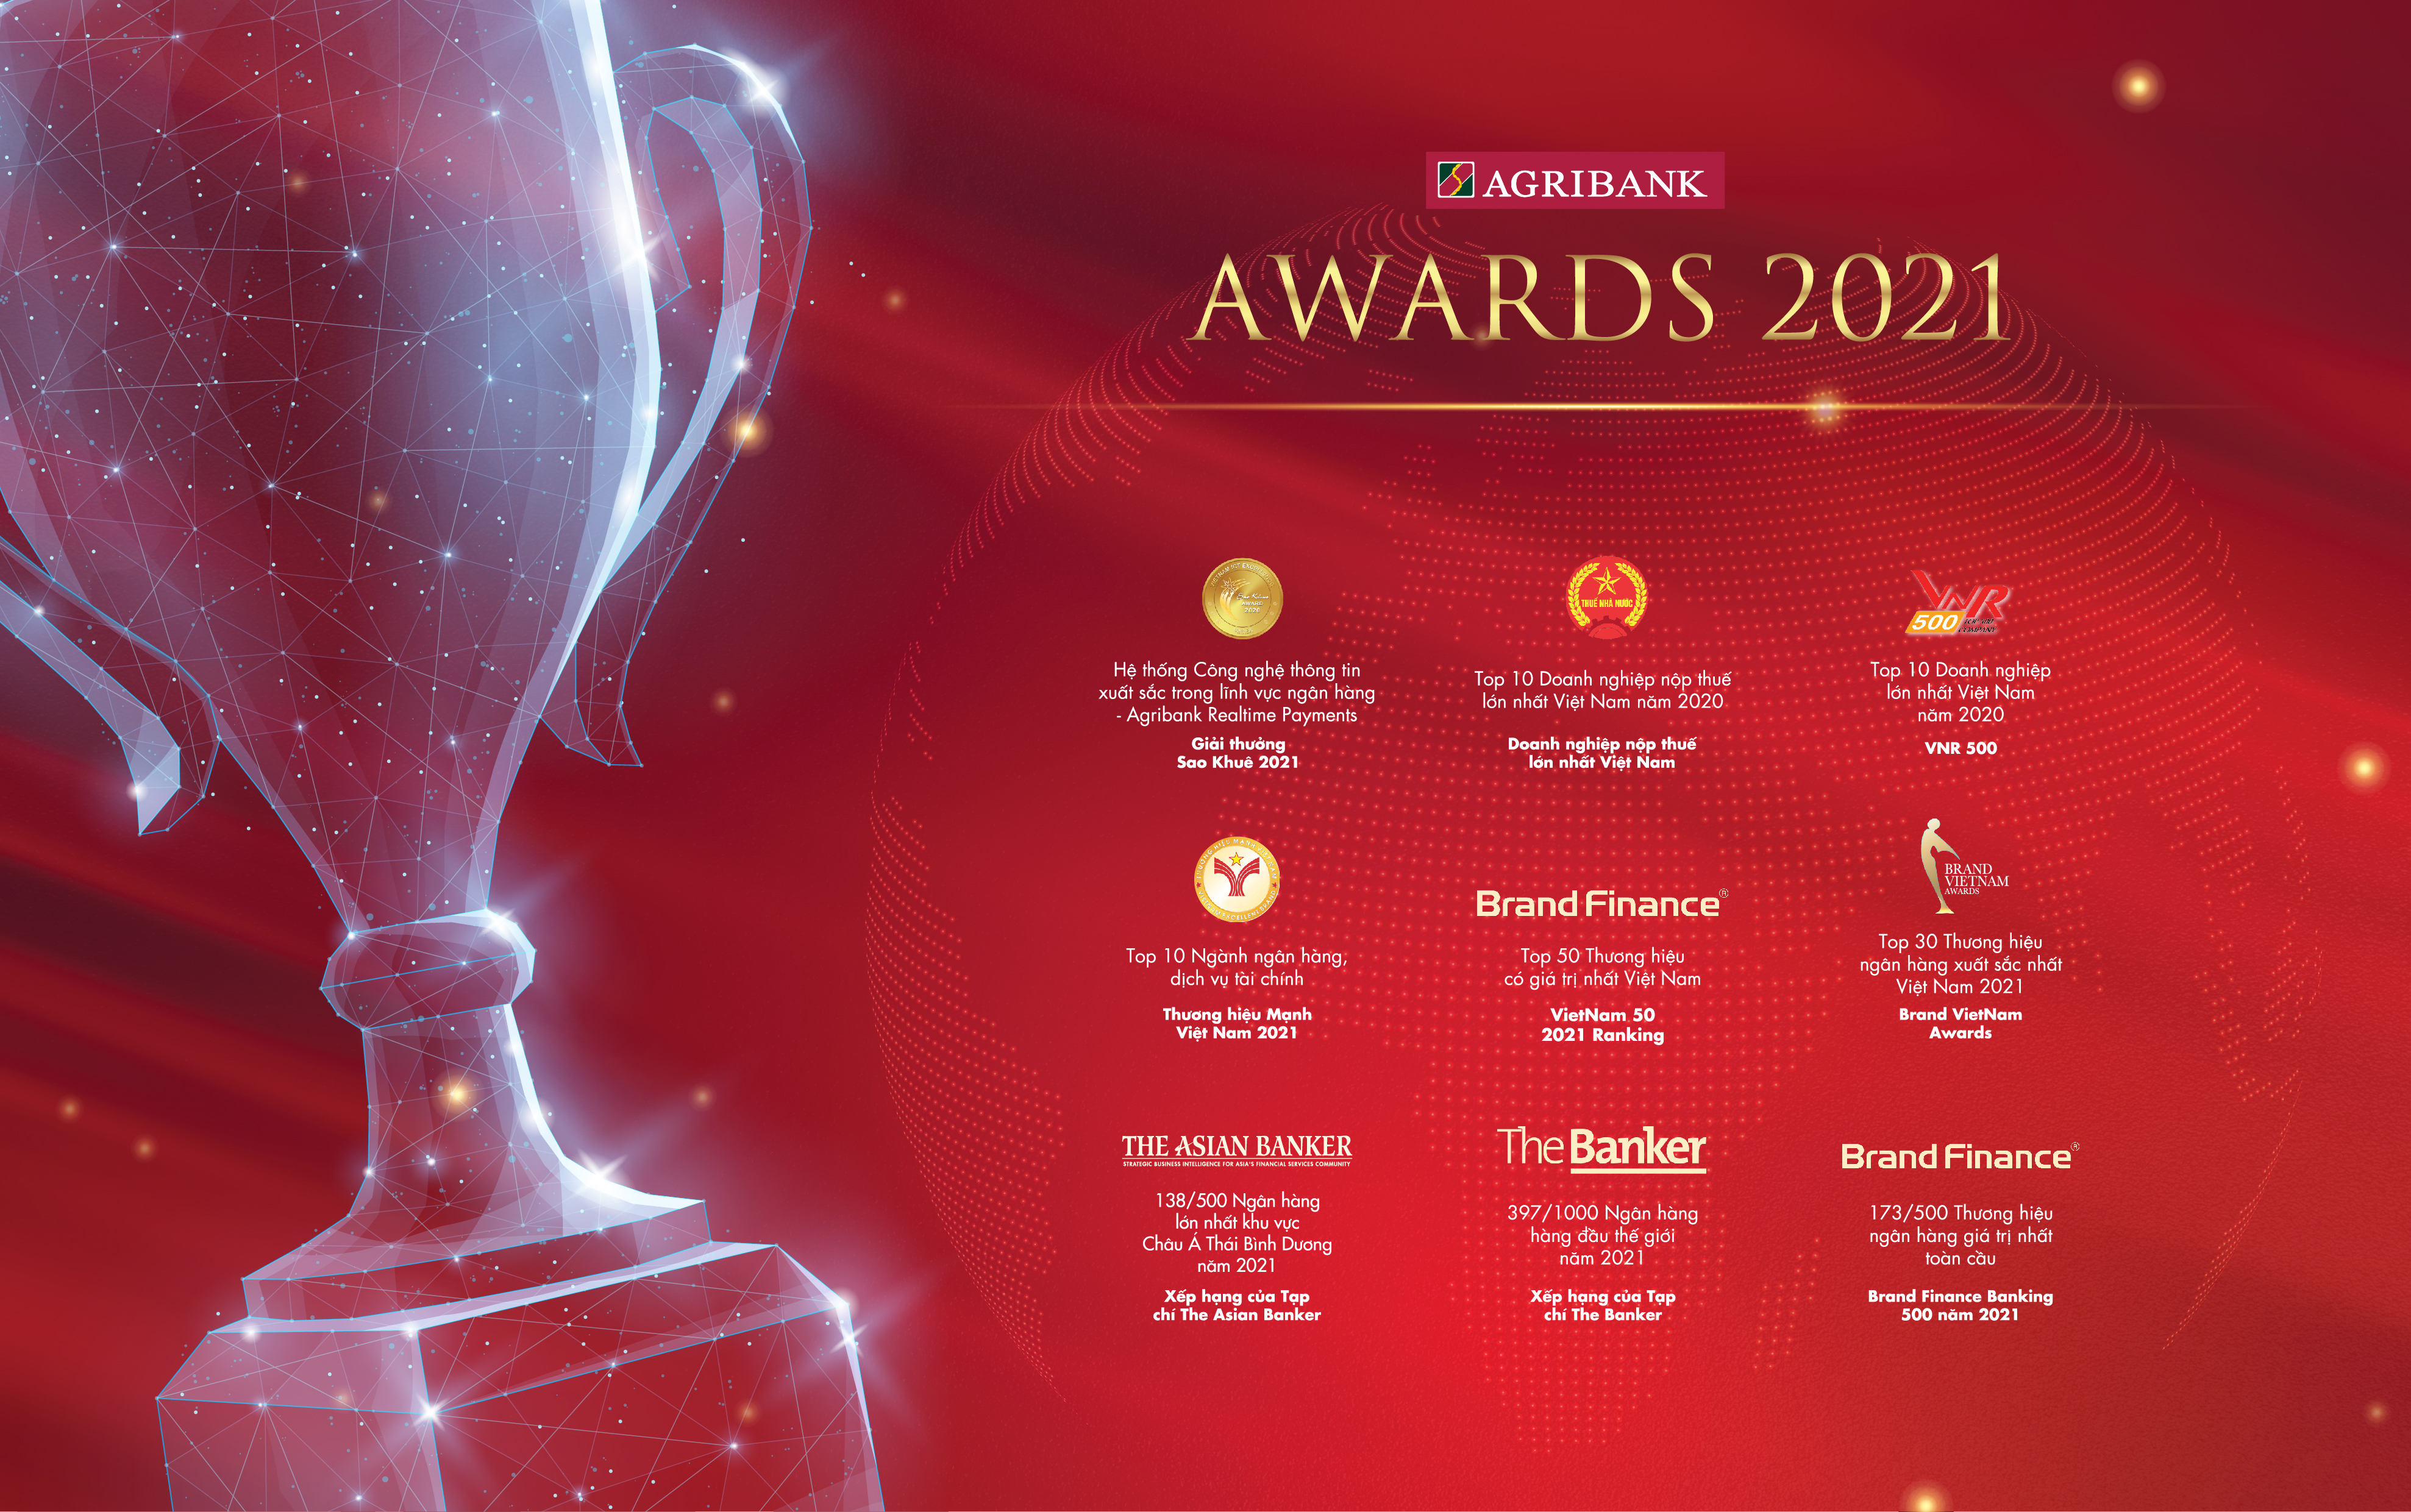 Hình ảnh: Agribank khẳng định vị thế với những giải thưởng trong nước và quốc tế năm 2021 số 2